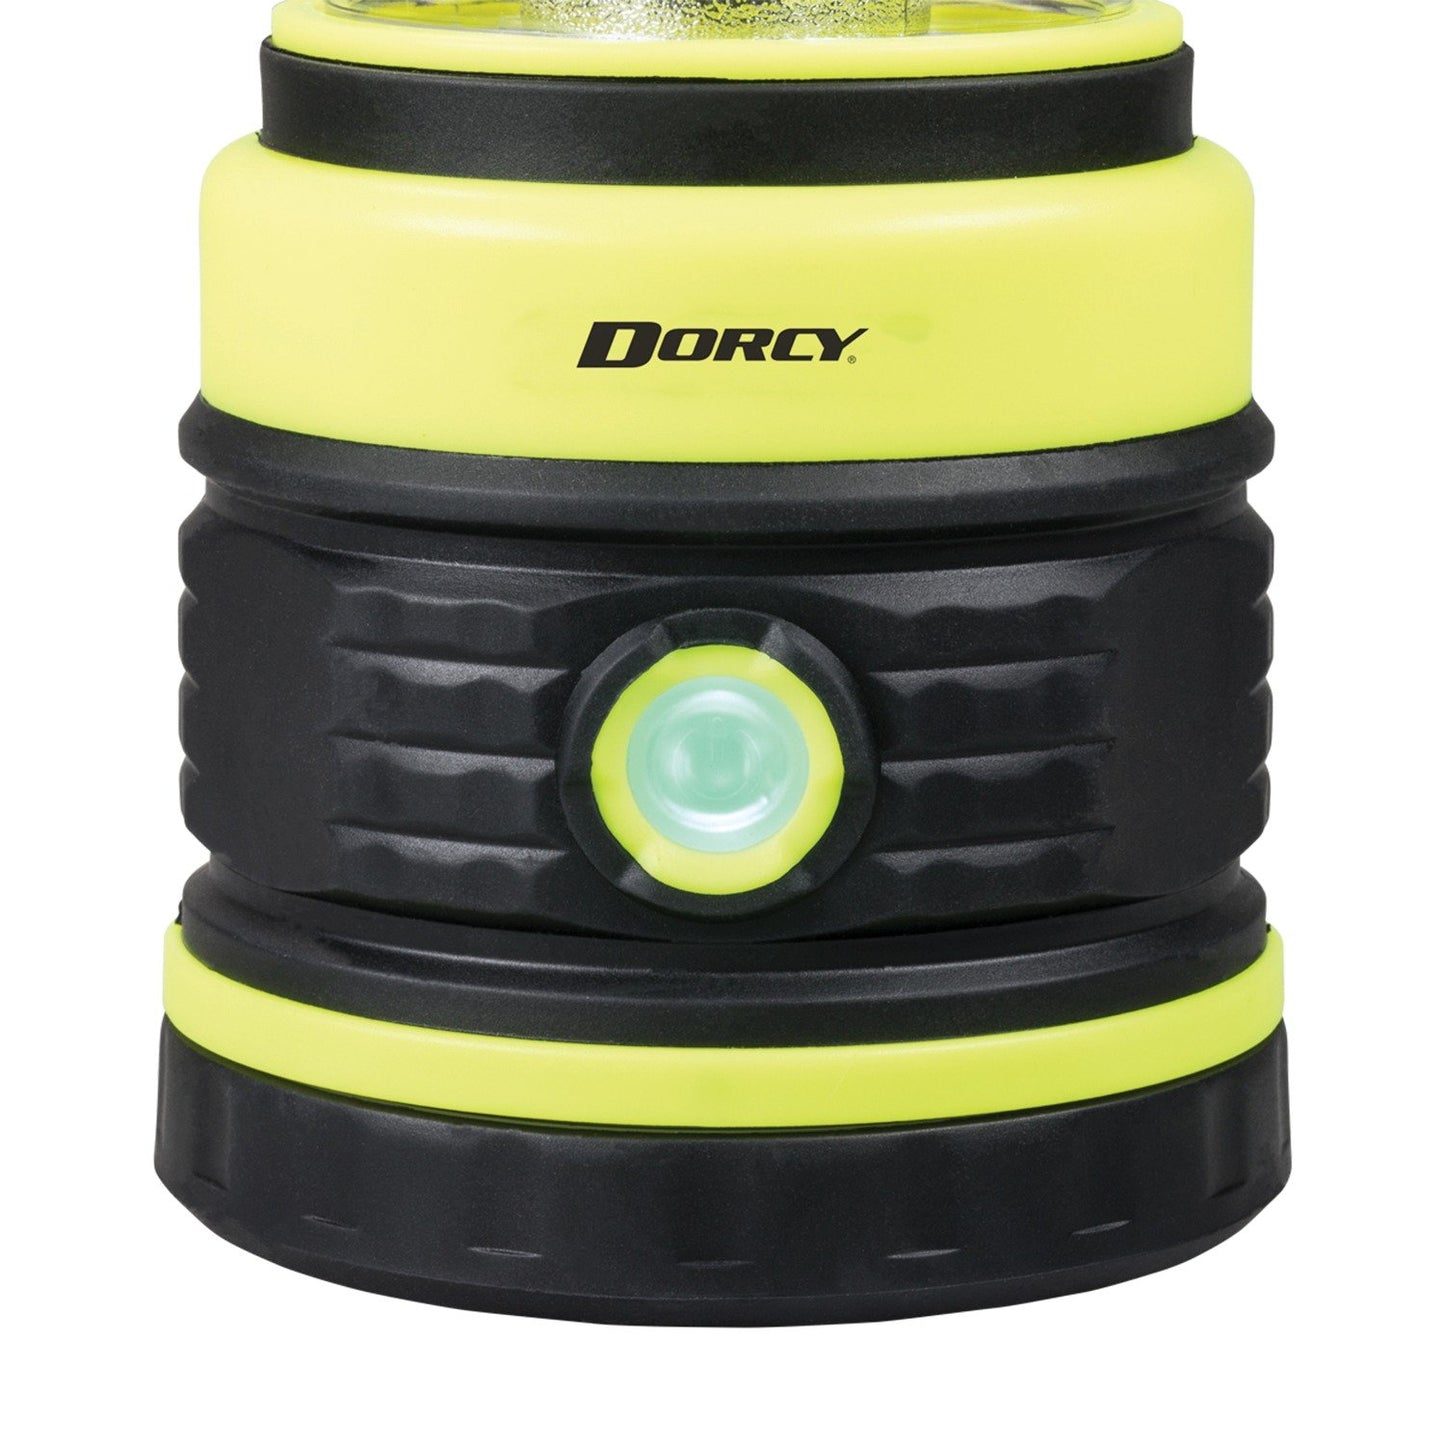 Dorcy 41-3968 1,000-Lumen Adventure Lantern